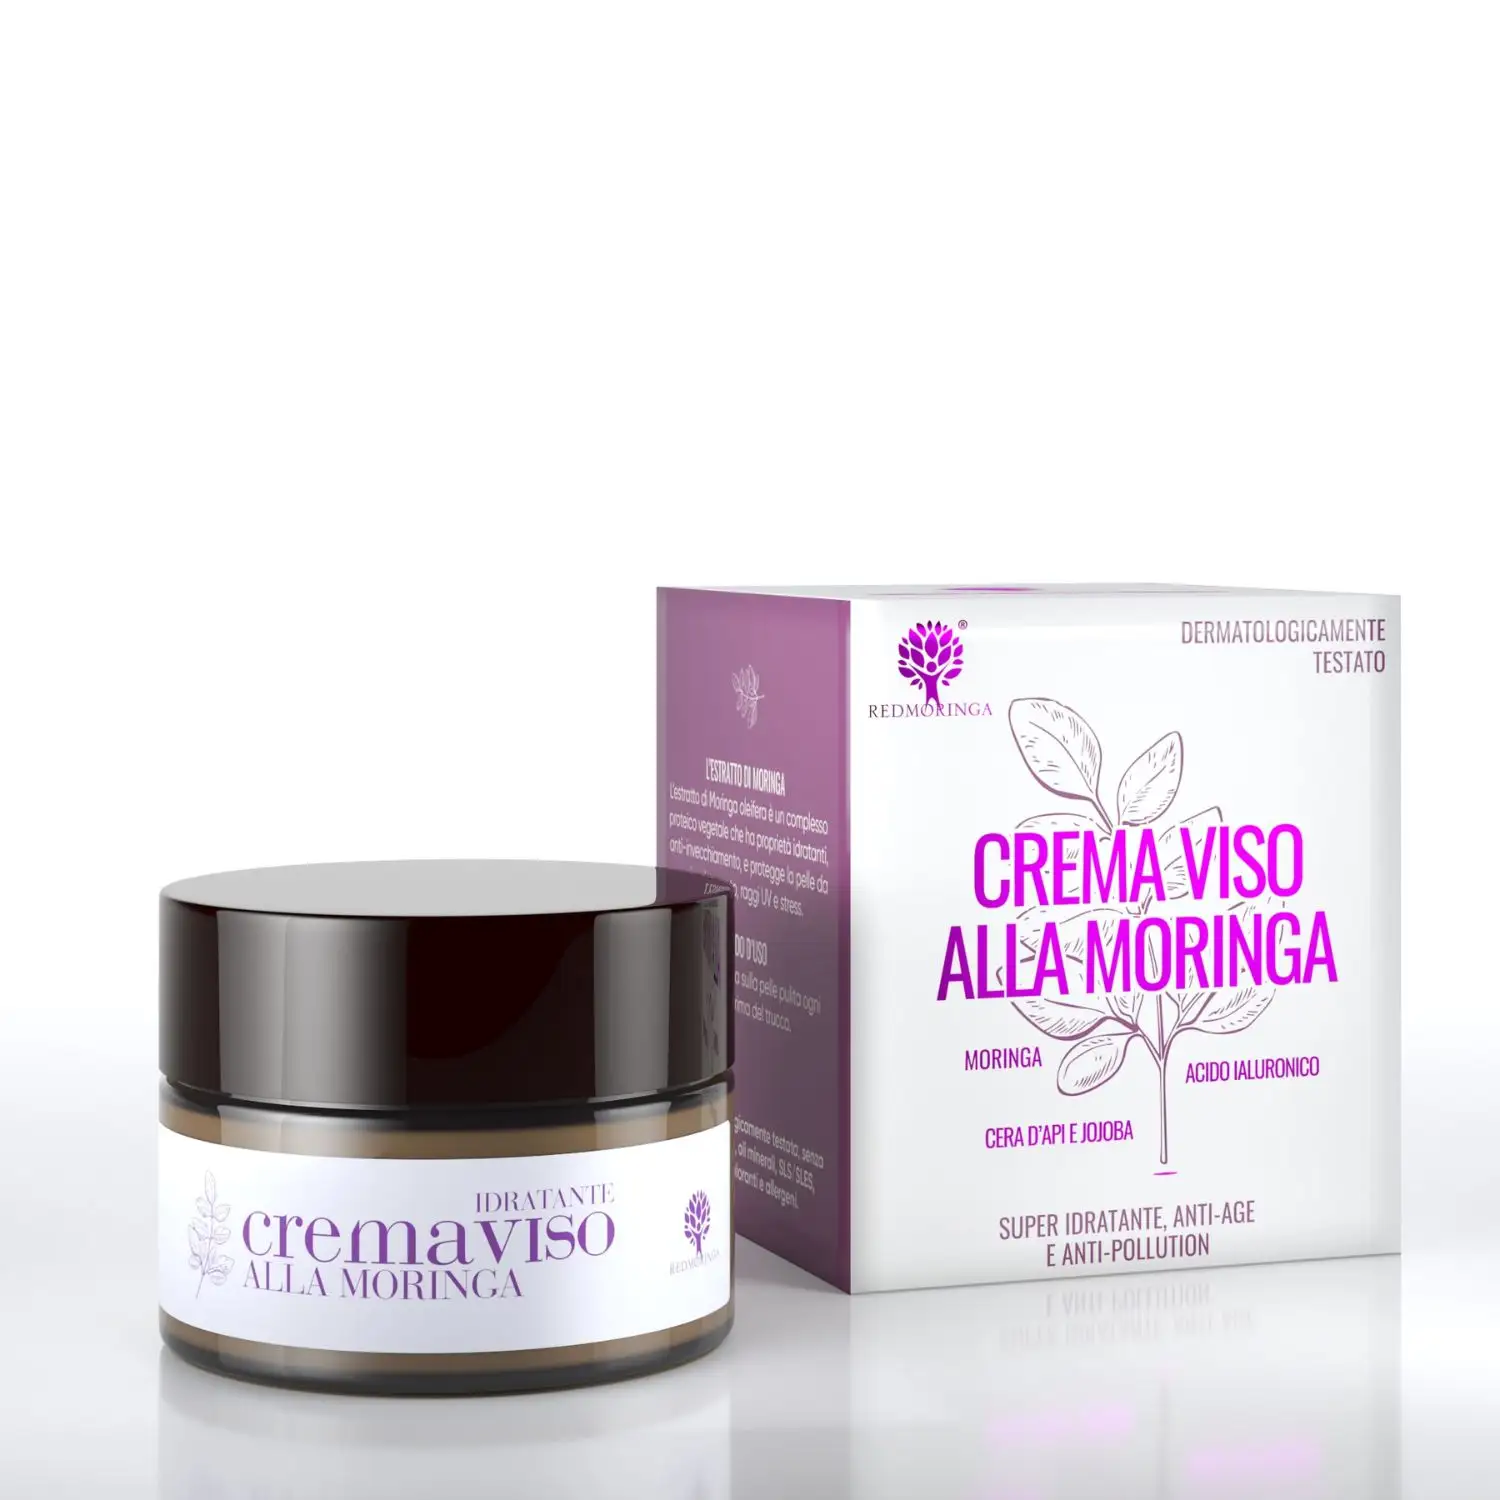 Crème hydratante pour le visage anti-âge et anti-pollution Moringa-99% naturel-RedMoringa-Haute qualité italienne